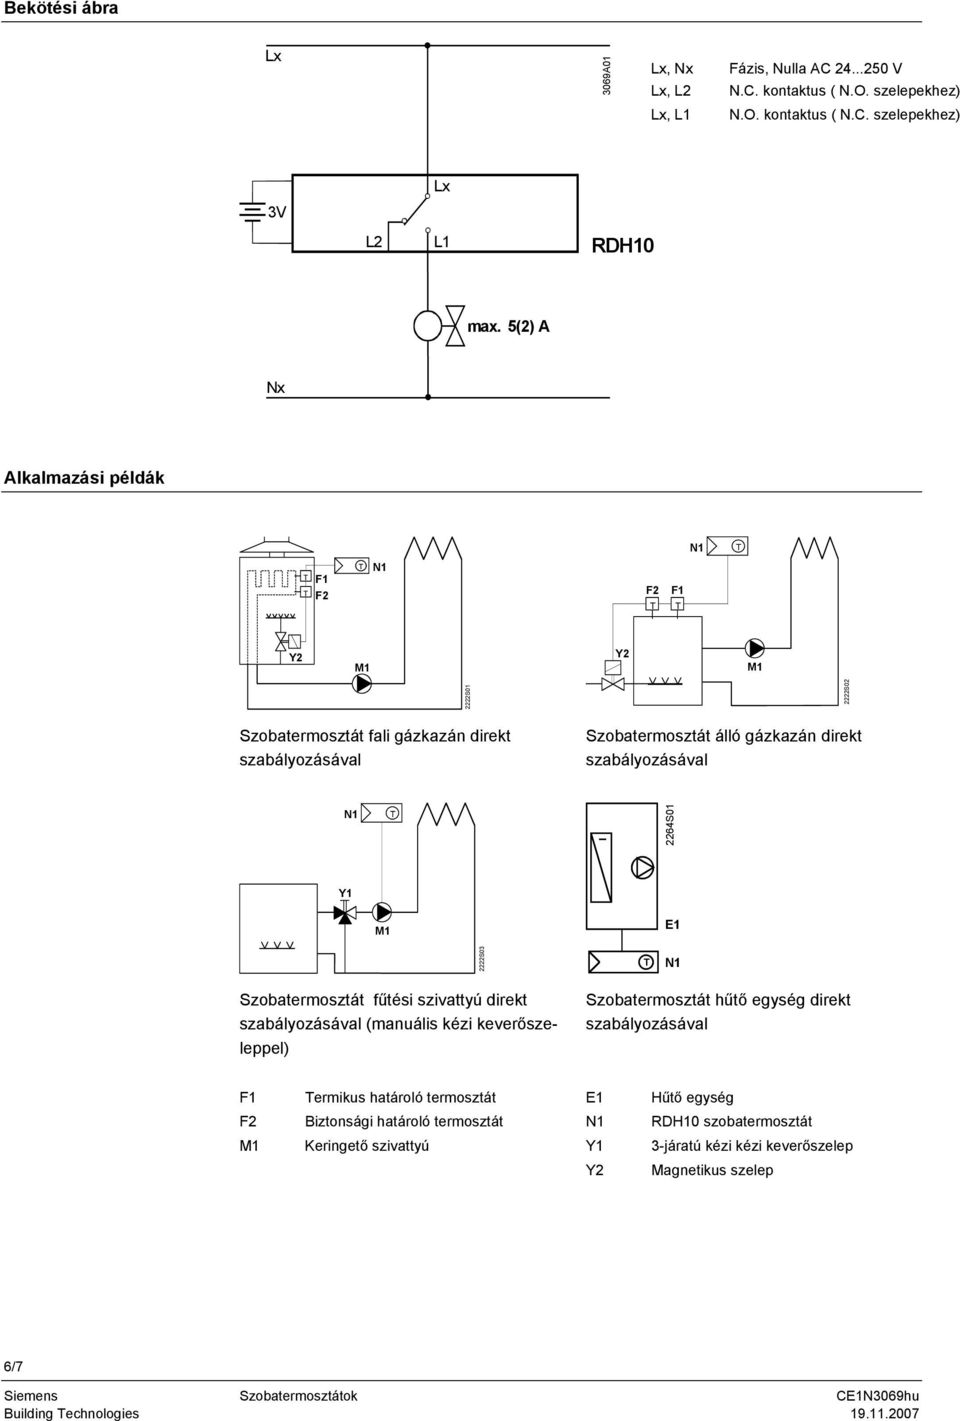 E1 2222S03 Szobatermosztát fűtési szivattyú direkt szabályozásával (manuális kézi keverőszeleppel) Szobatermosztát hűtő egység direkt szabályozásával F1 F2 ermikus határoló